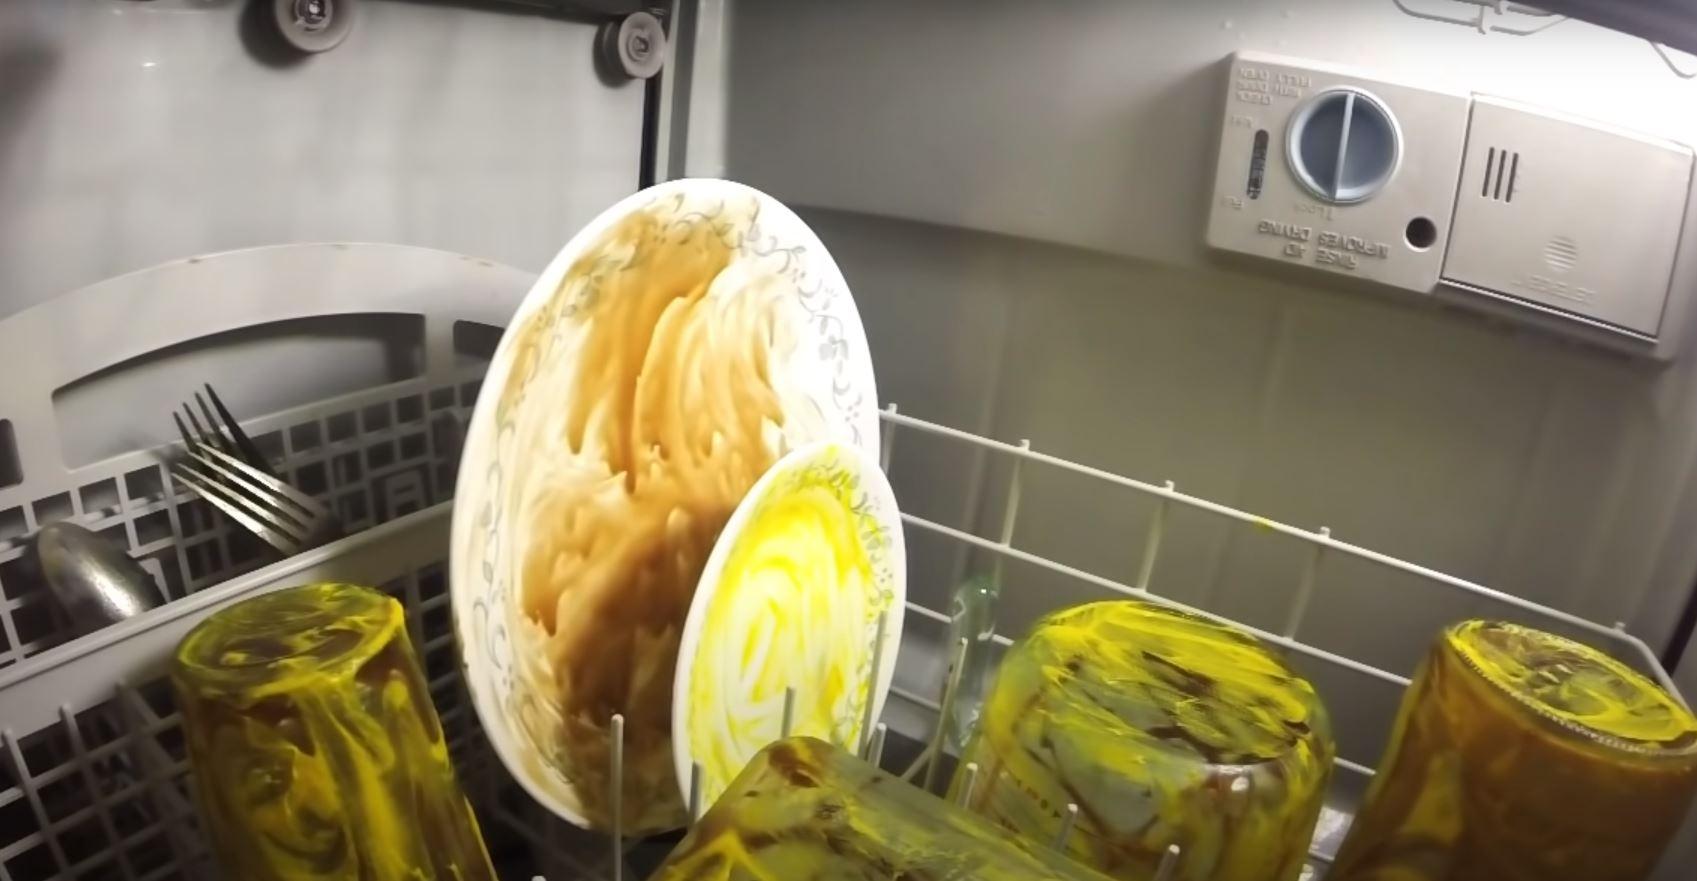 Ako vas je zanimalo kako mašina ustvari pere posuđe, pogledajte video iz unutrašnjosti